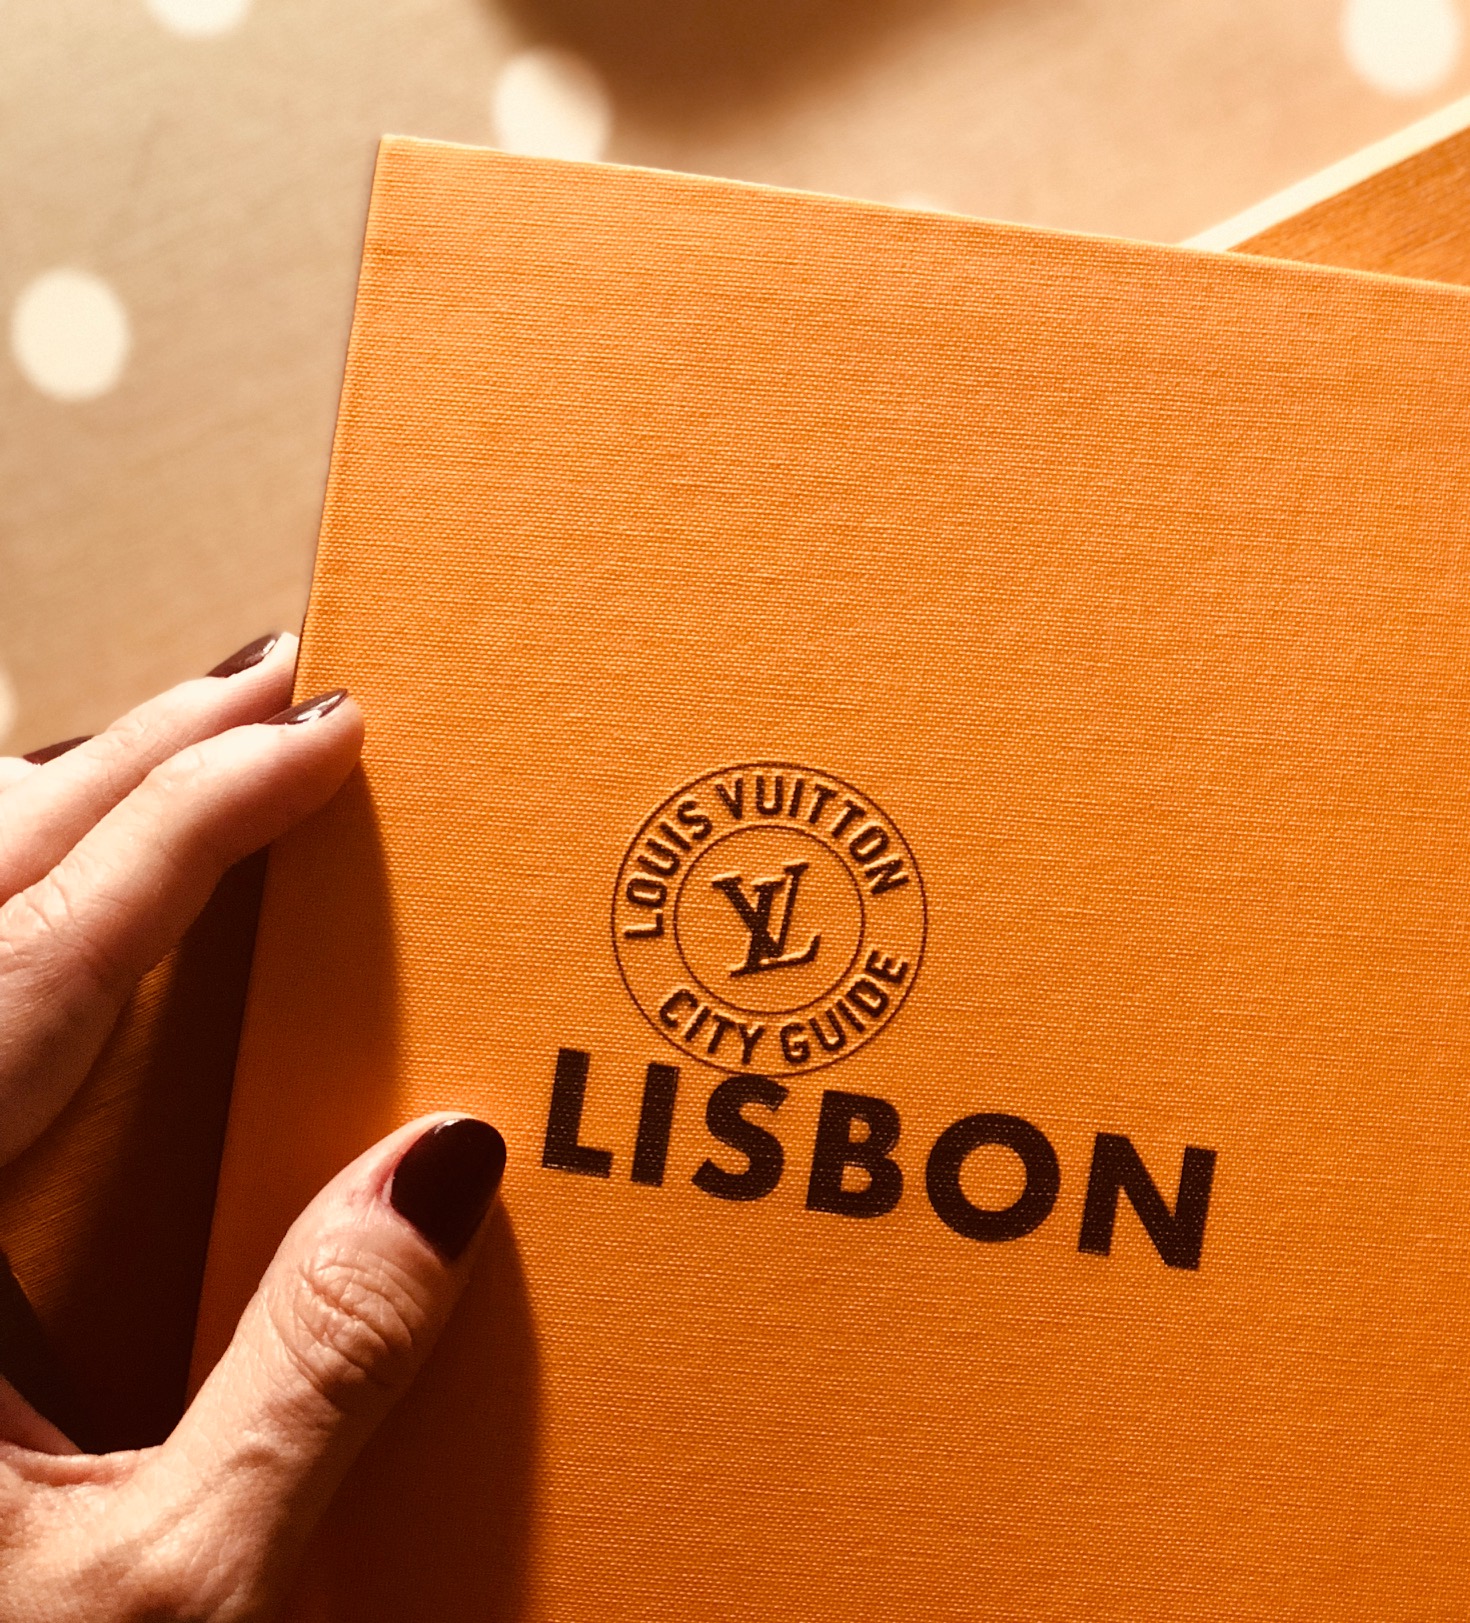 Louis Vuitton " LISBON " Portugal City Guide Book